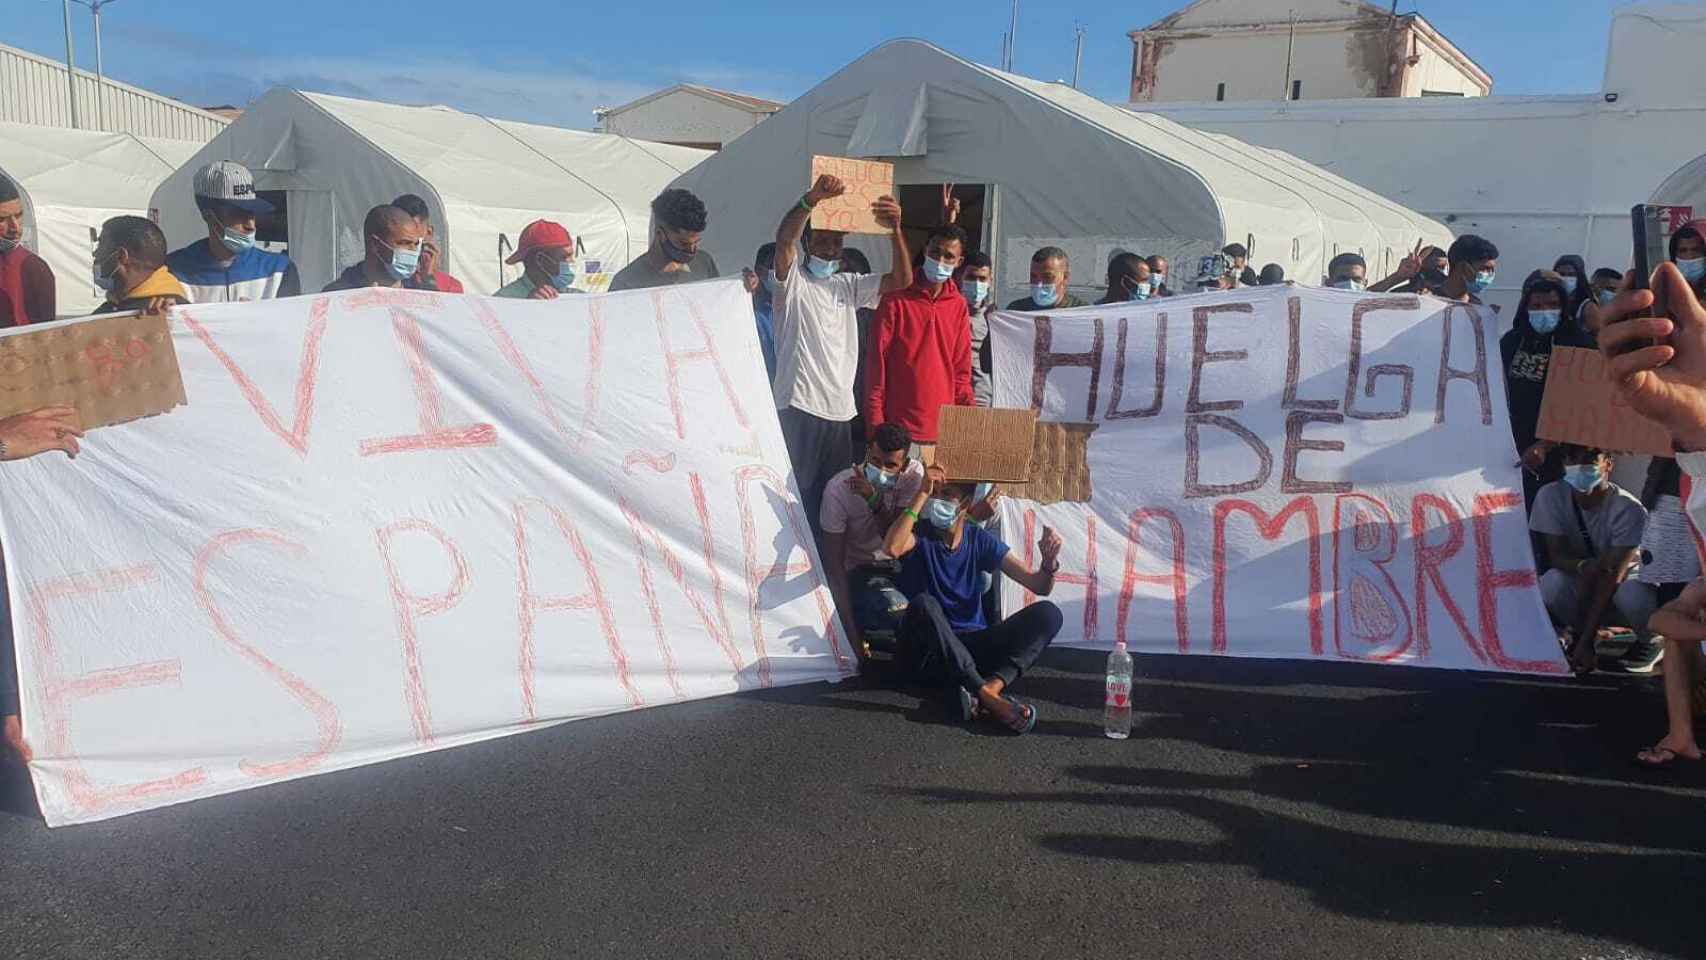 Viva España y Huelga de hambre, las pancartas en el campamento